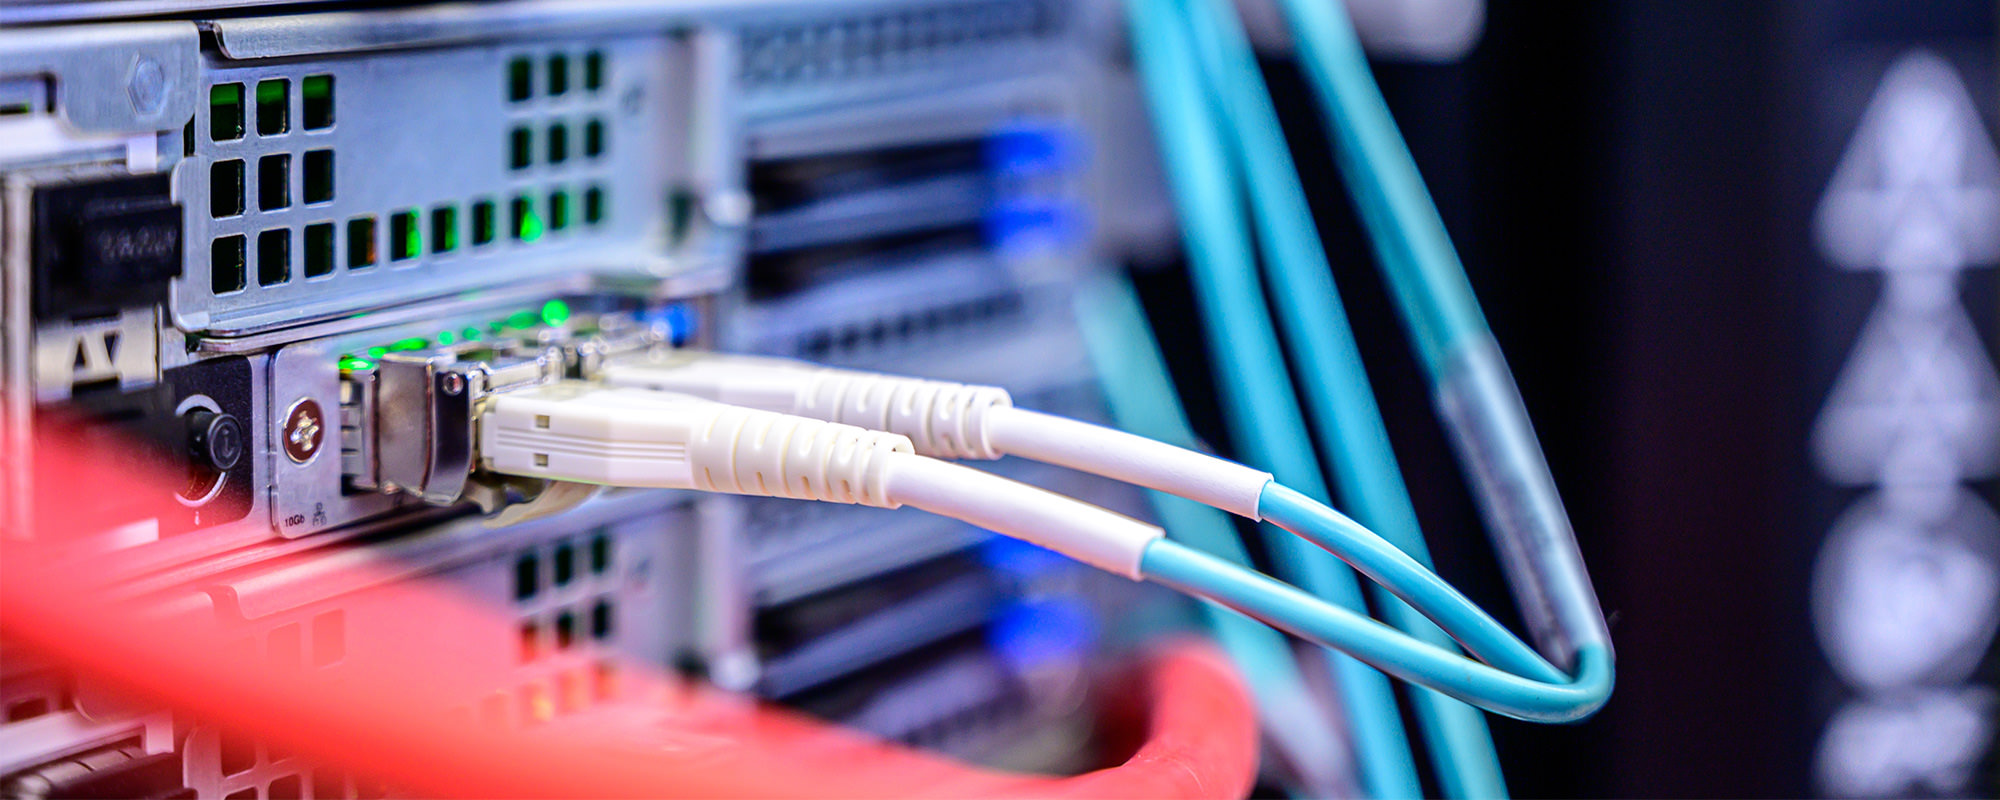 Netzwerk Switch mit eingestecktem Kabel im Bereich Netzsicherheit